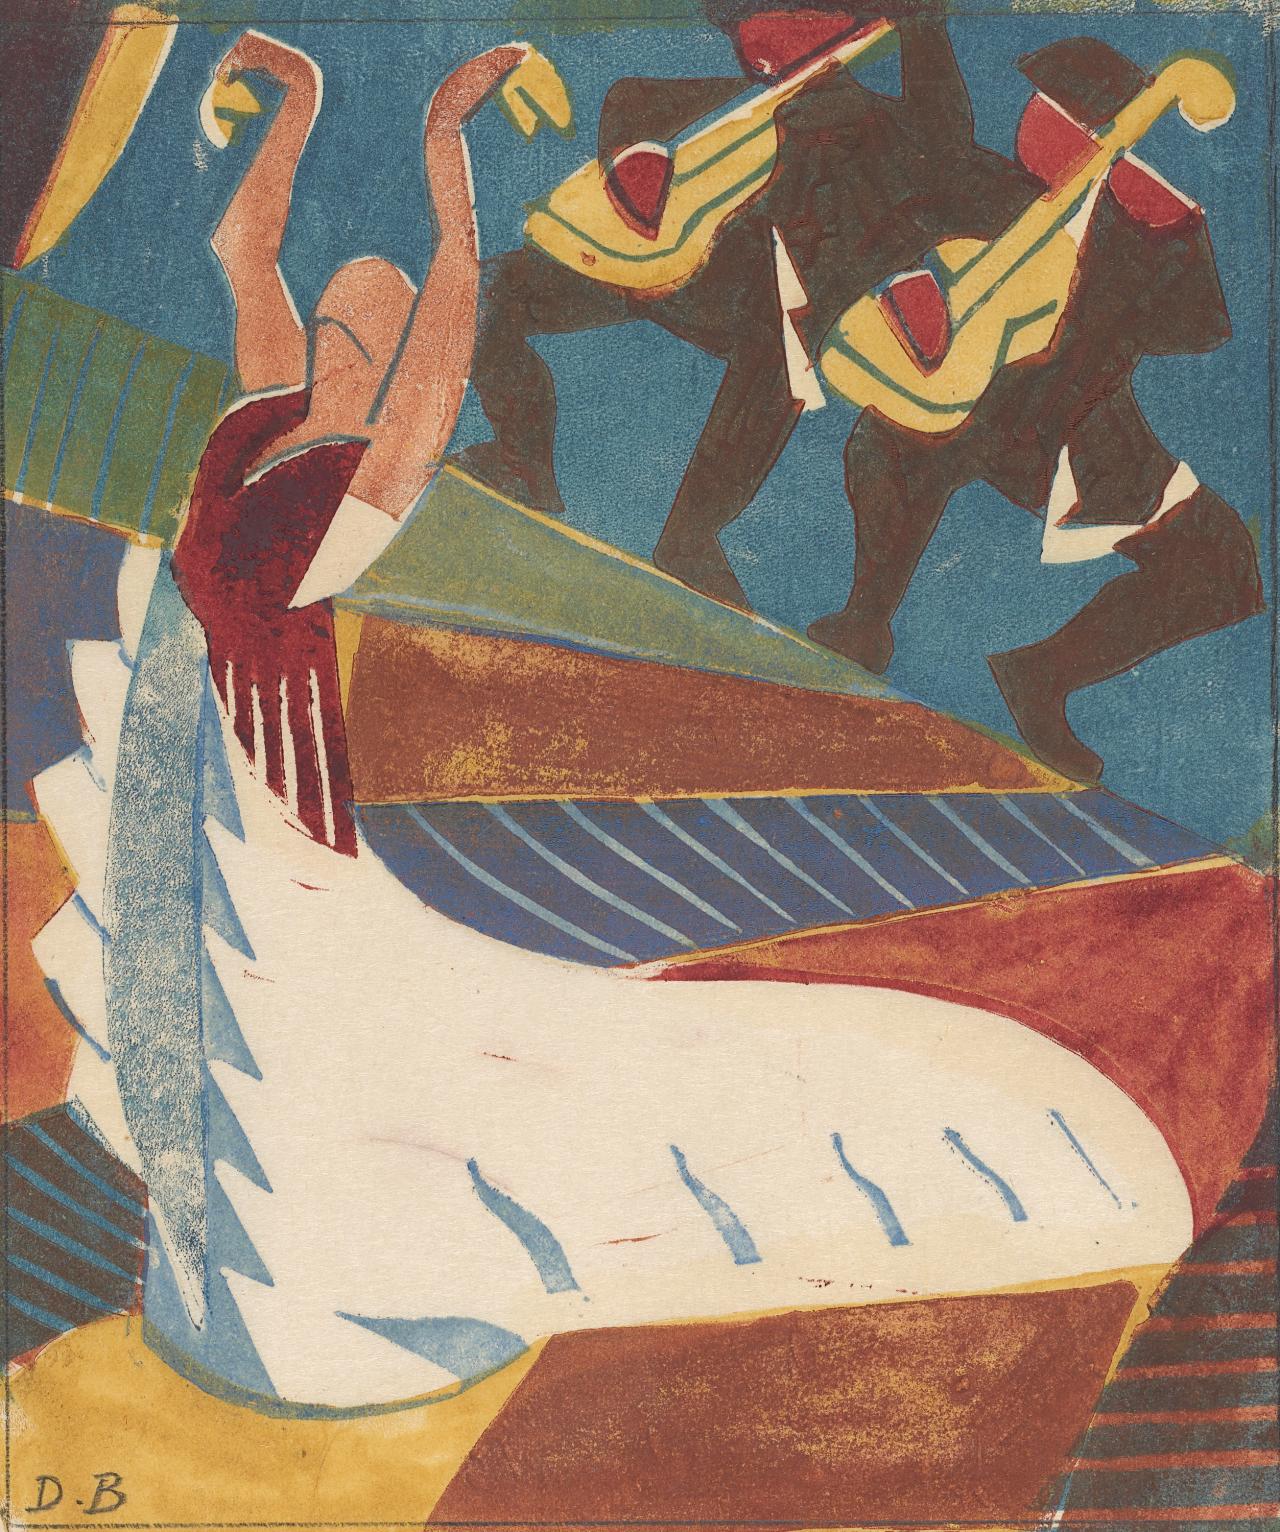 Argentine (la danseuse espagnole) by Dorrit Black - Vers 1929 - 18.8 × 16.0 cm National Gallery of Victoria